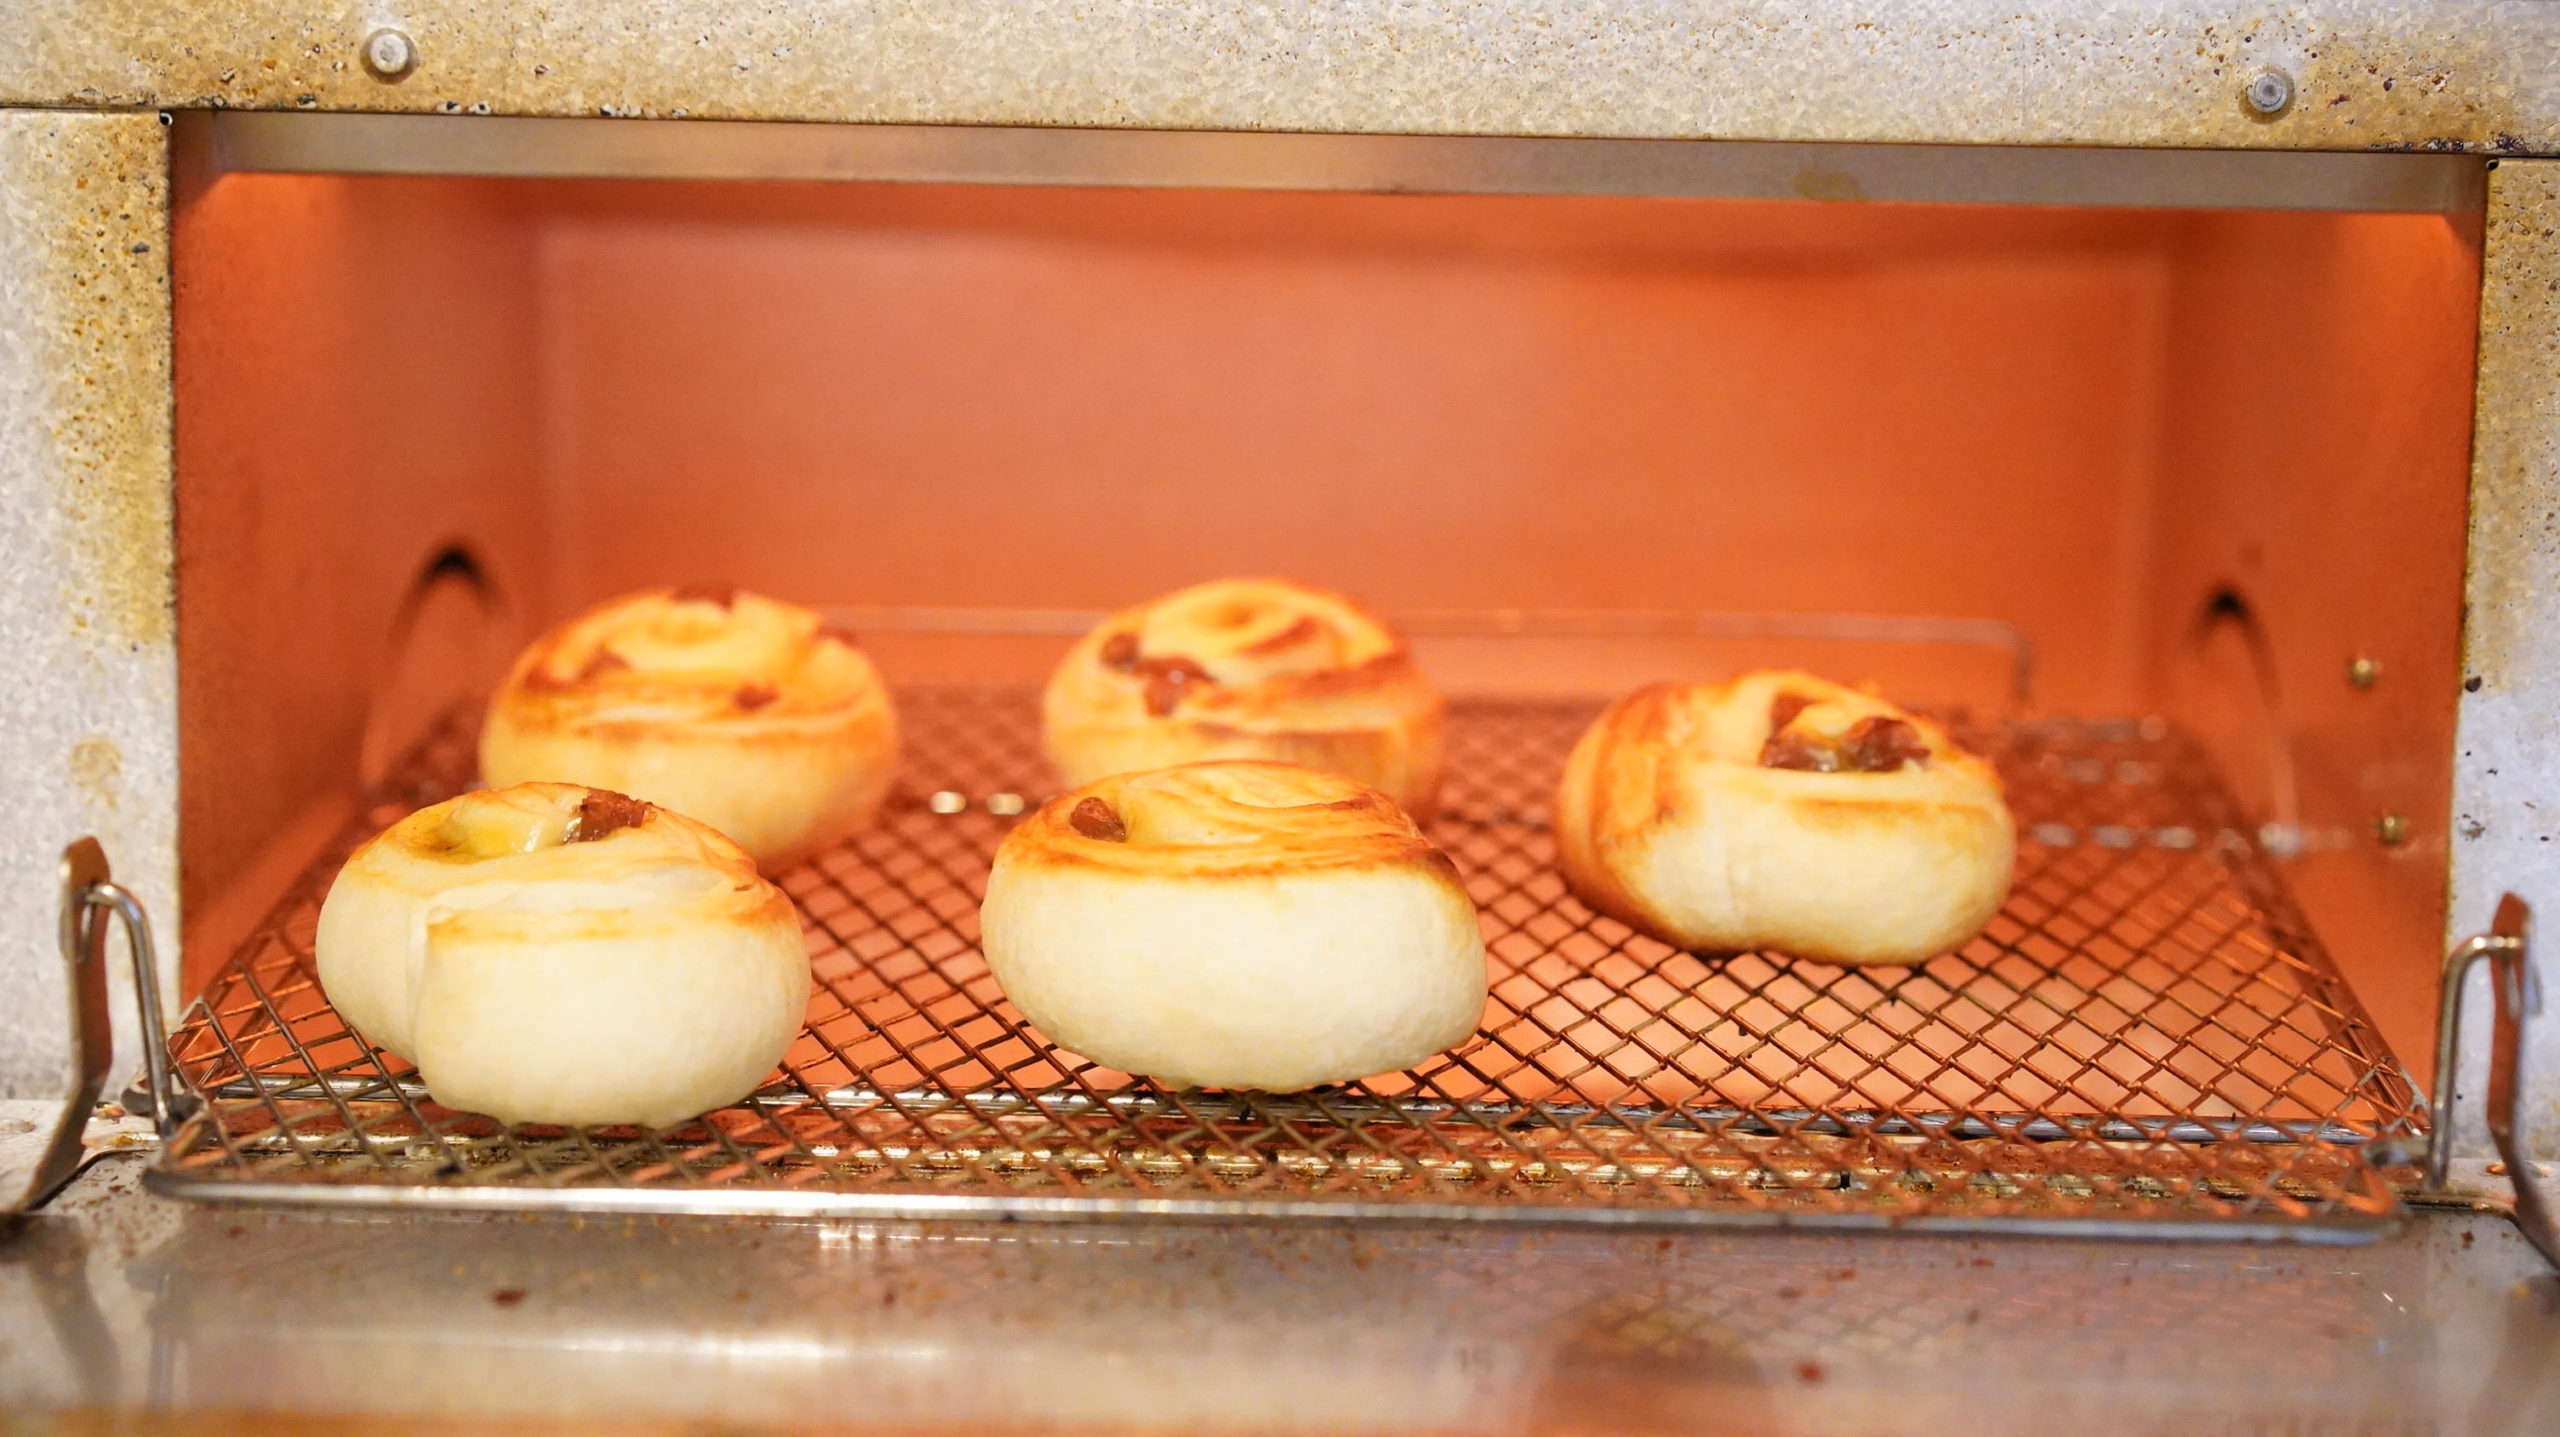 ピカールのおすすめ冷凍食品「ミニ・パンオレザン」をオーブントースターで調理している写真